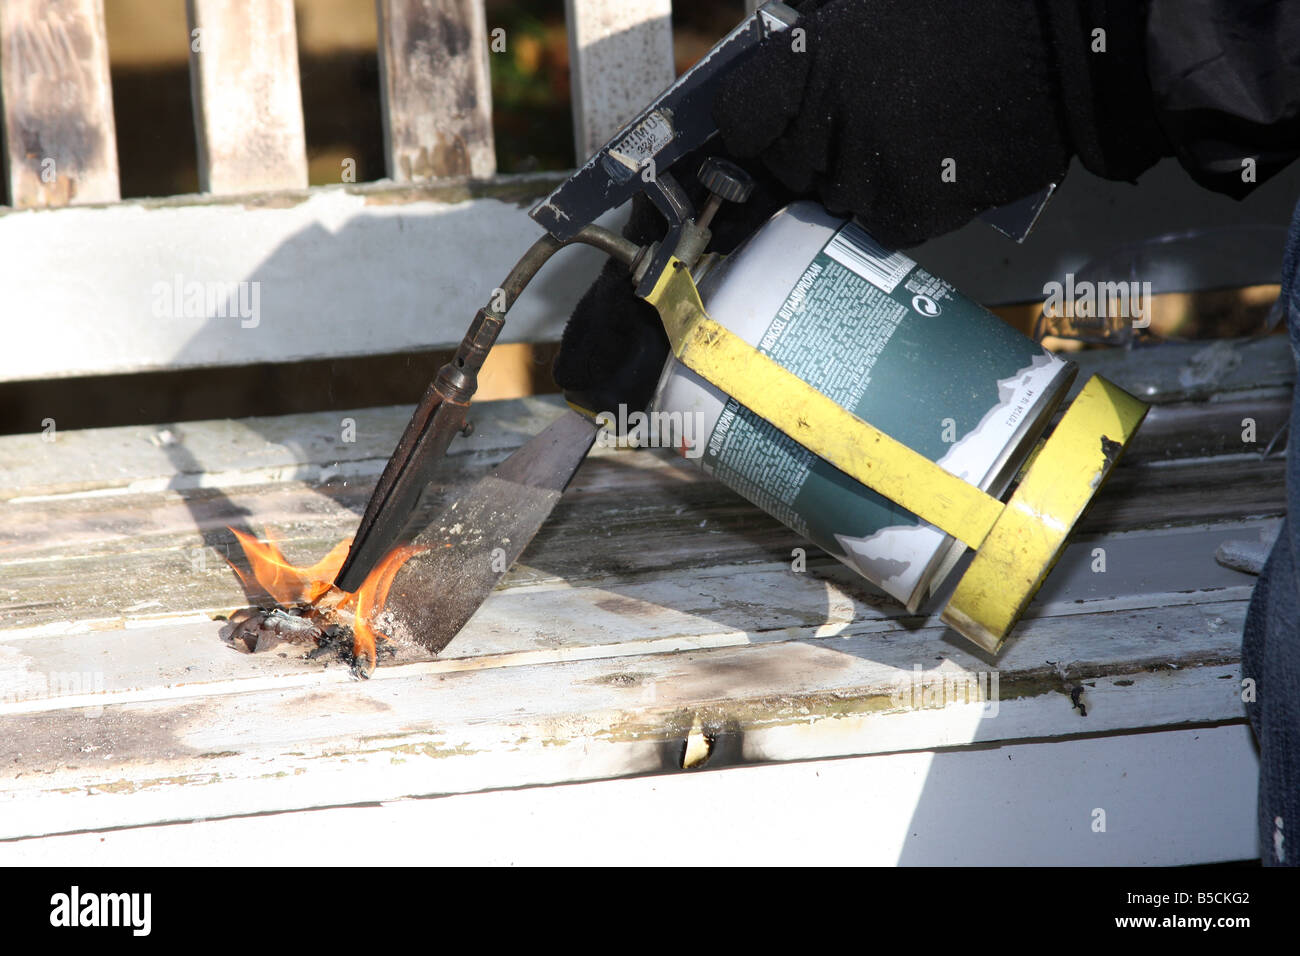 Unter Verwendung eines Gas-Lötlampe und Schaber, um alten Farbe von einem Garten-Sitzplatz vor dem Neuanstrich zu verbrennen. Stockfoto